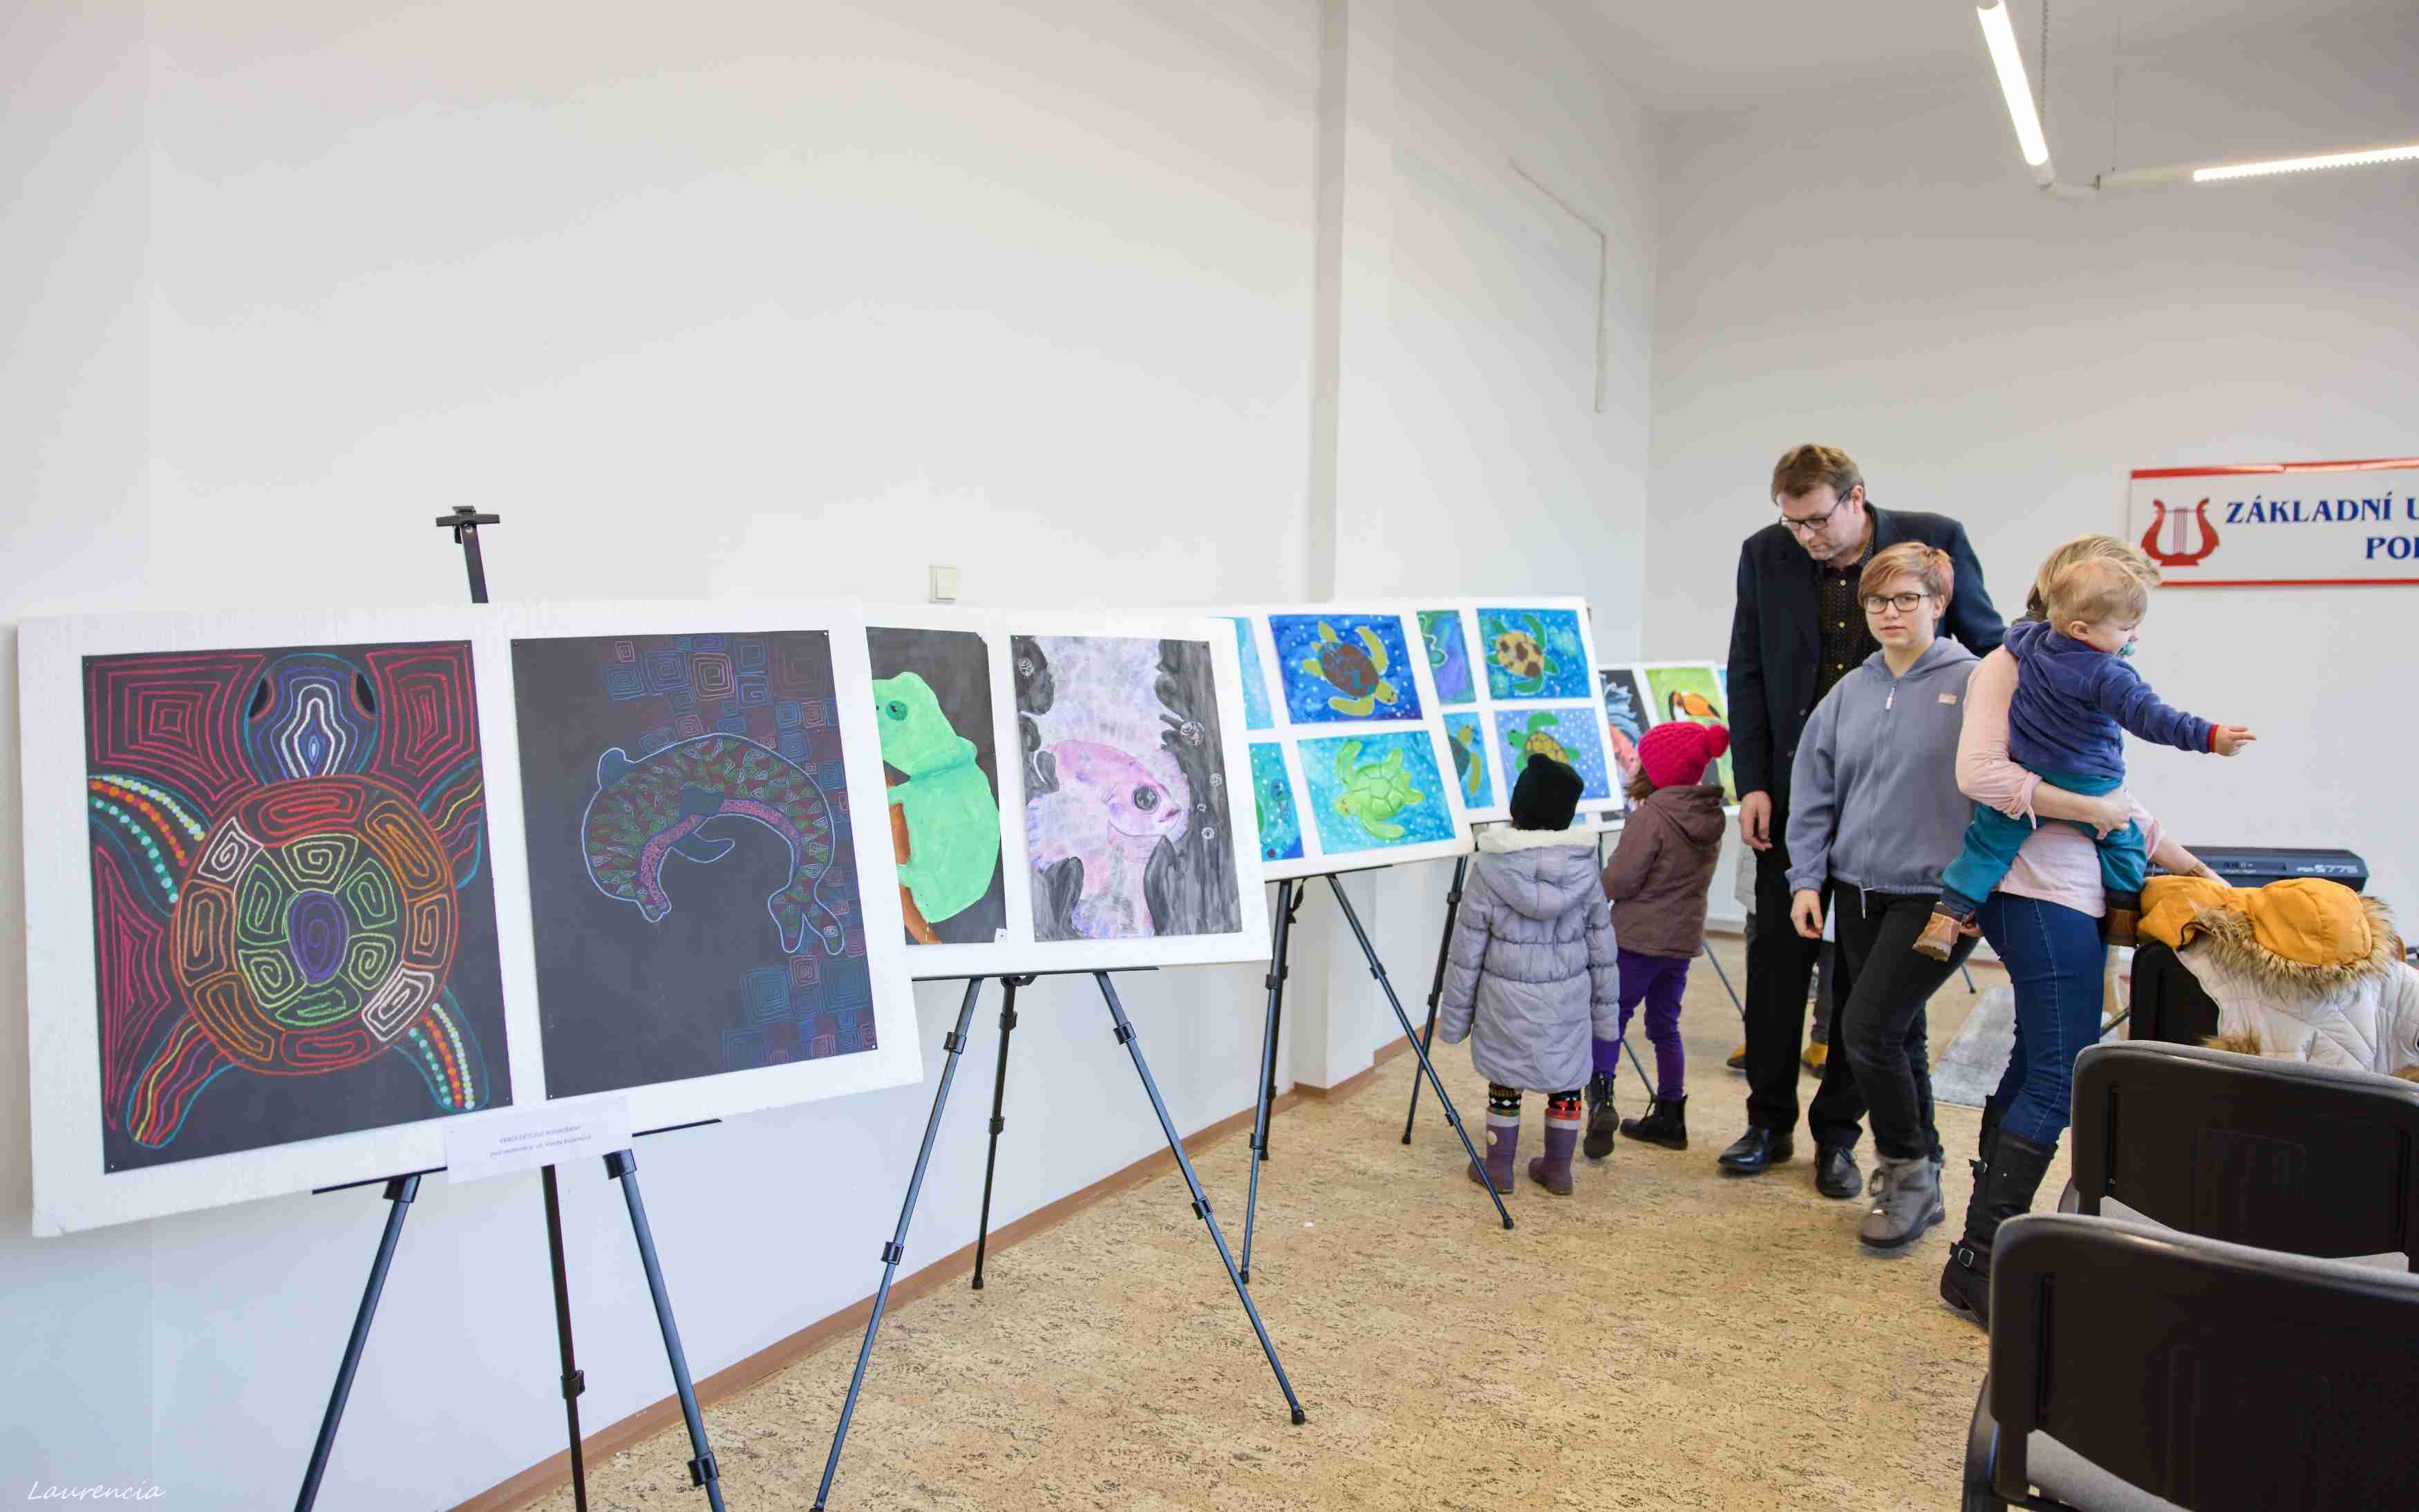 FOTO: V Podbořanech vystavují mladí umělci své výtvarné práce. Putovní výstava zkrášlí Domov pro seniory